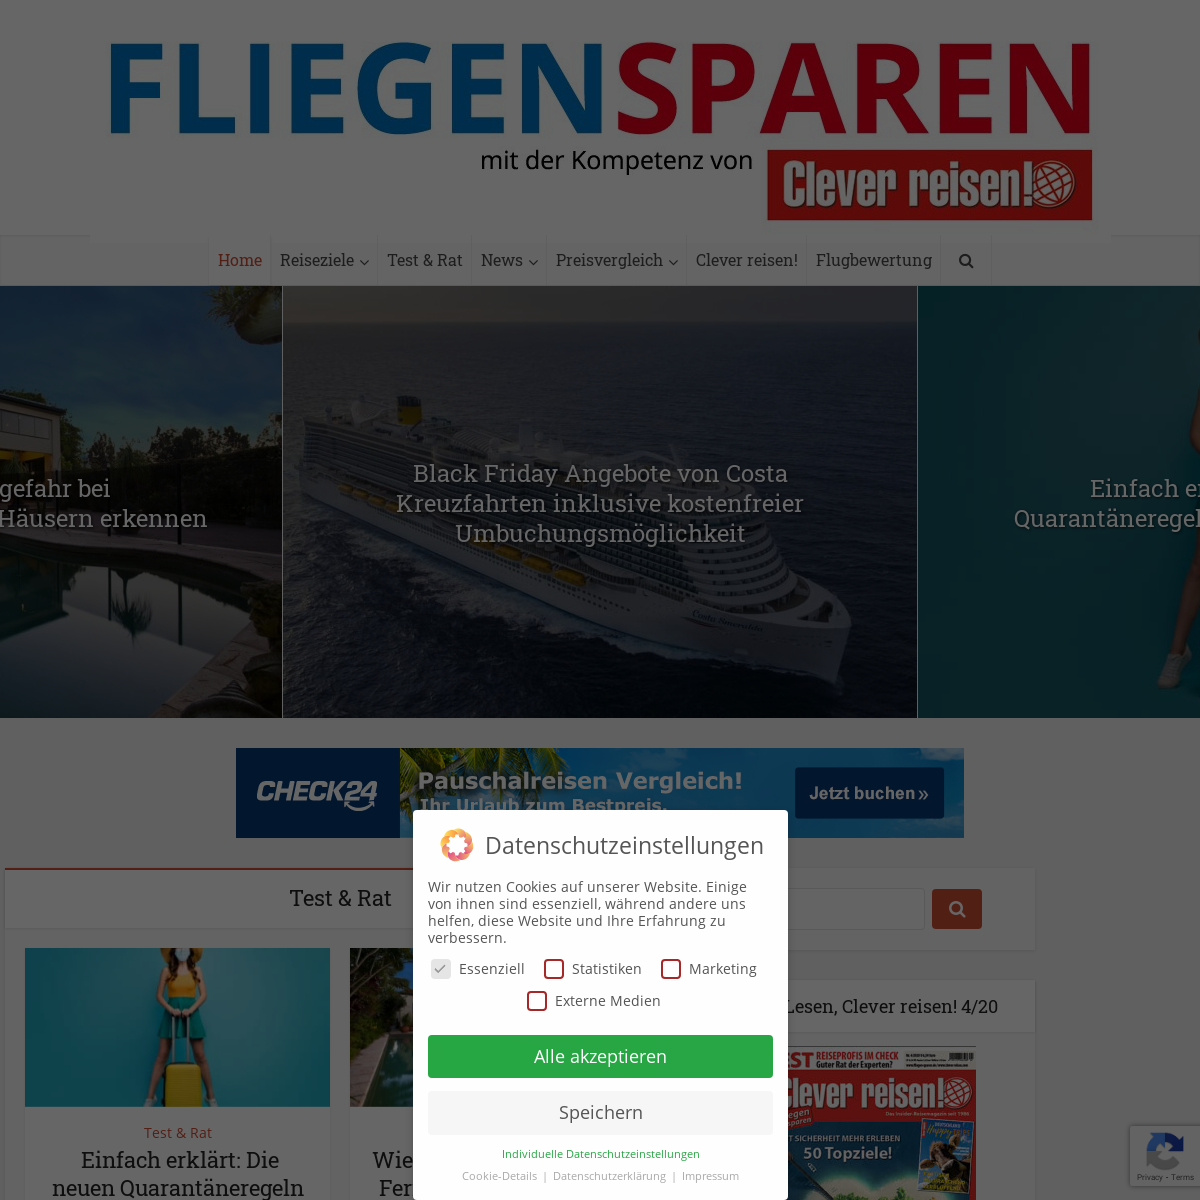 A complete backup of fliegen-sparen.de